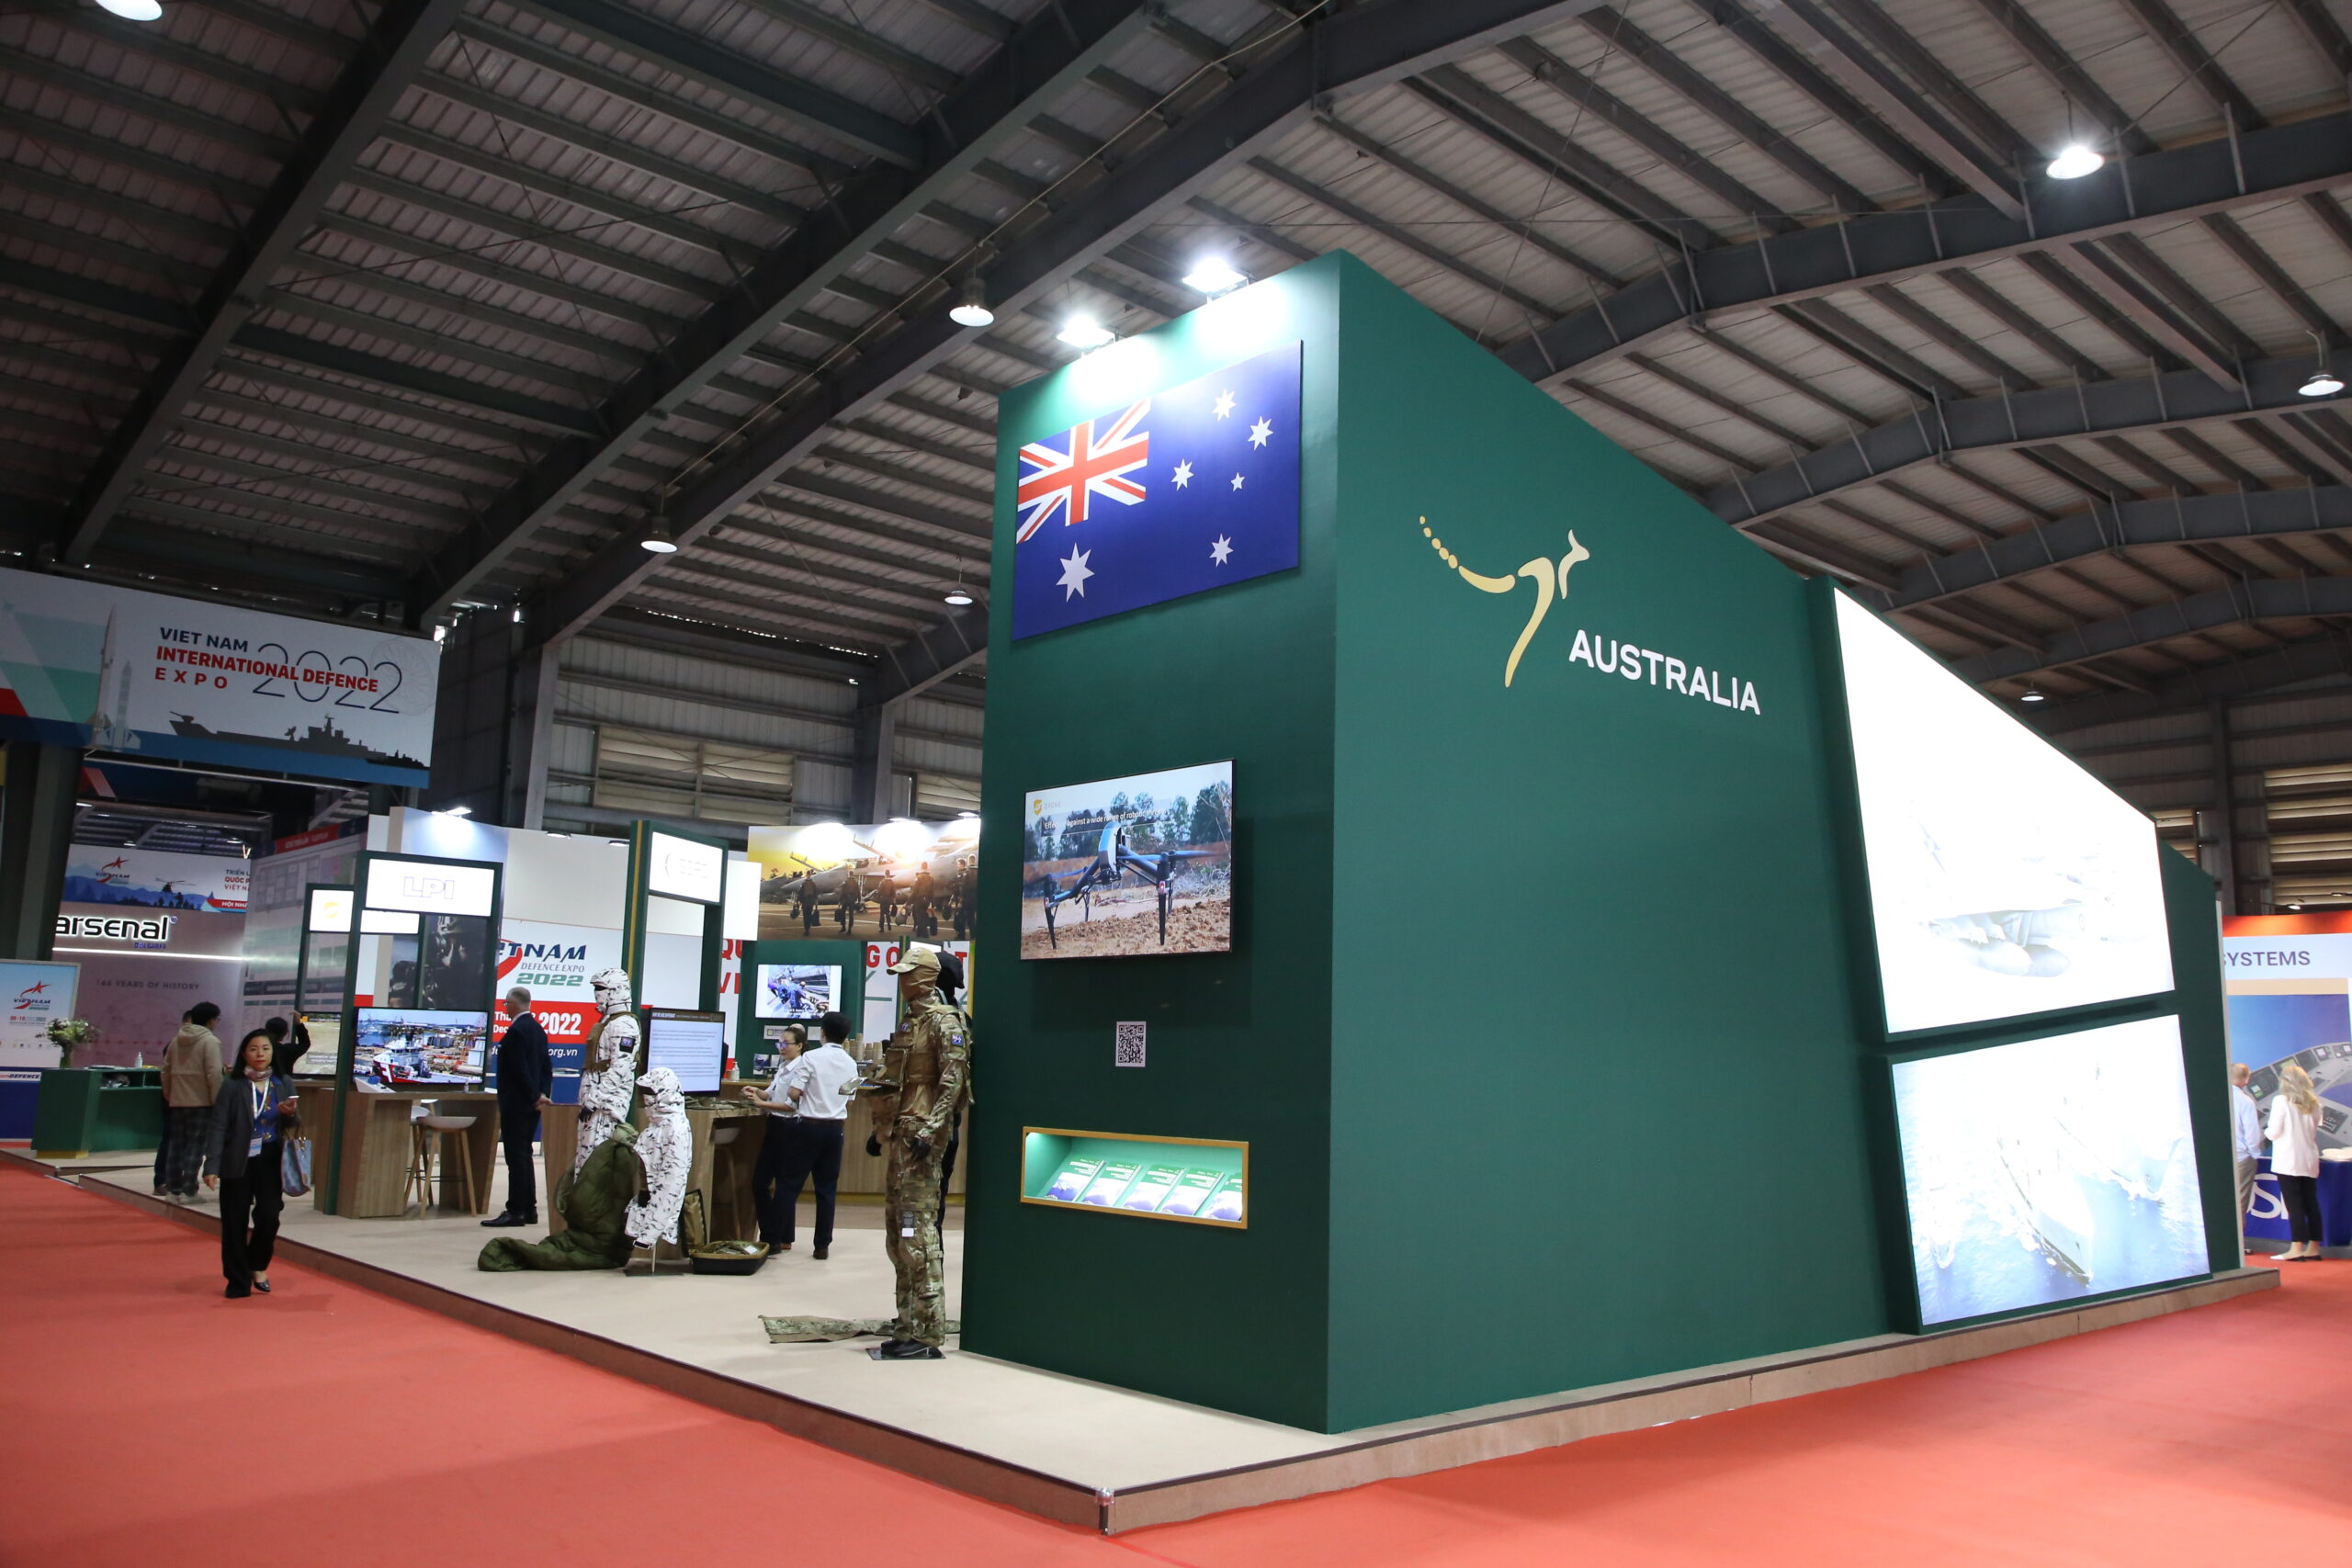 Team Defence Australia Pavilions